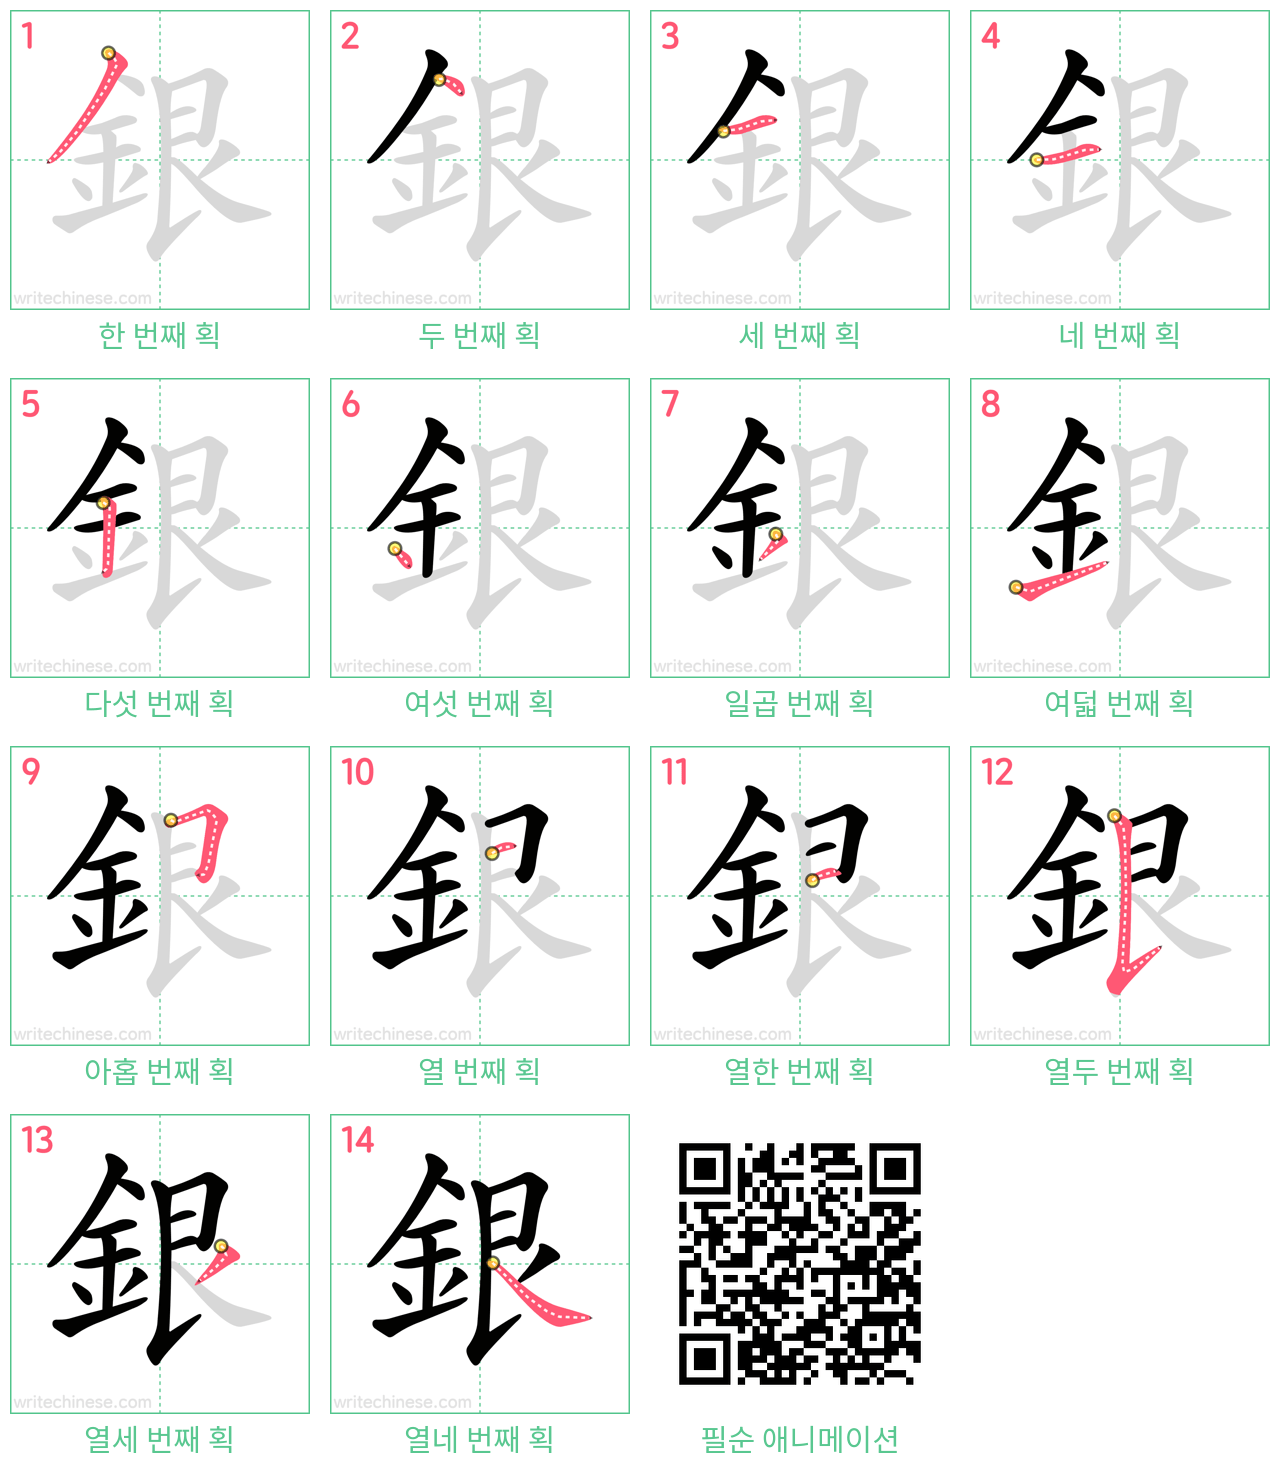 銀 step-by-step stroke order diagrams